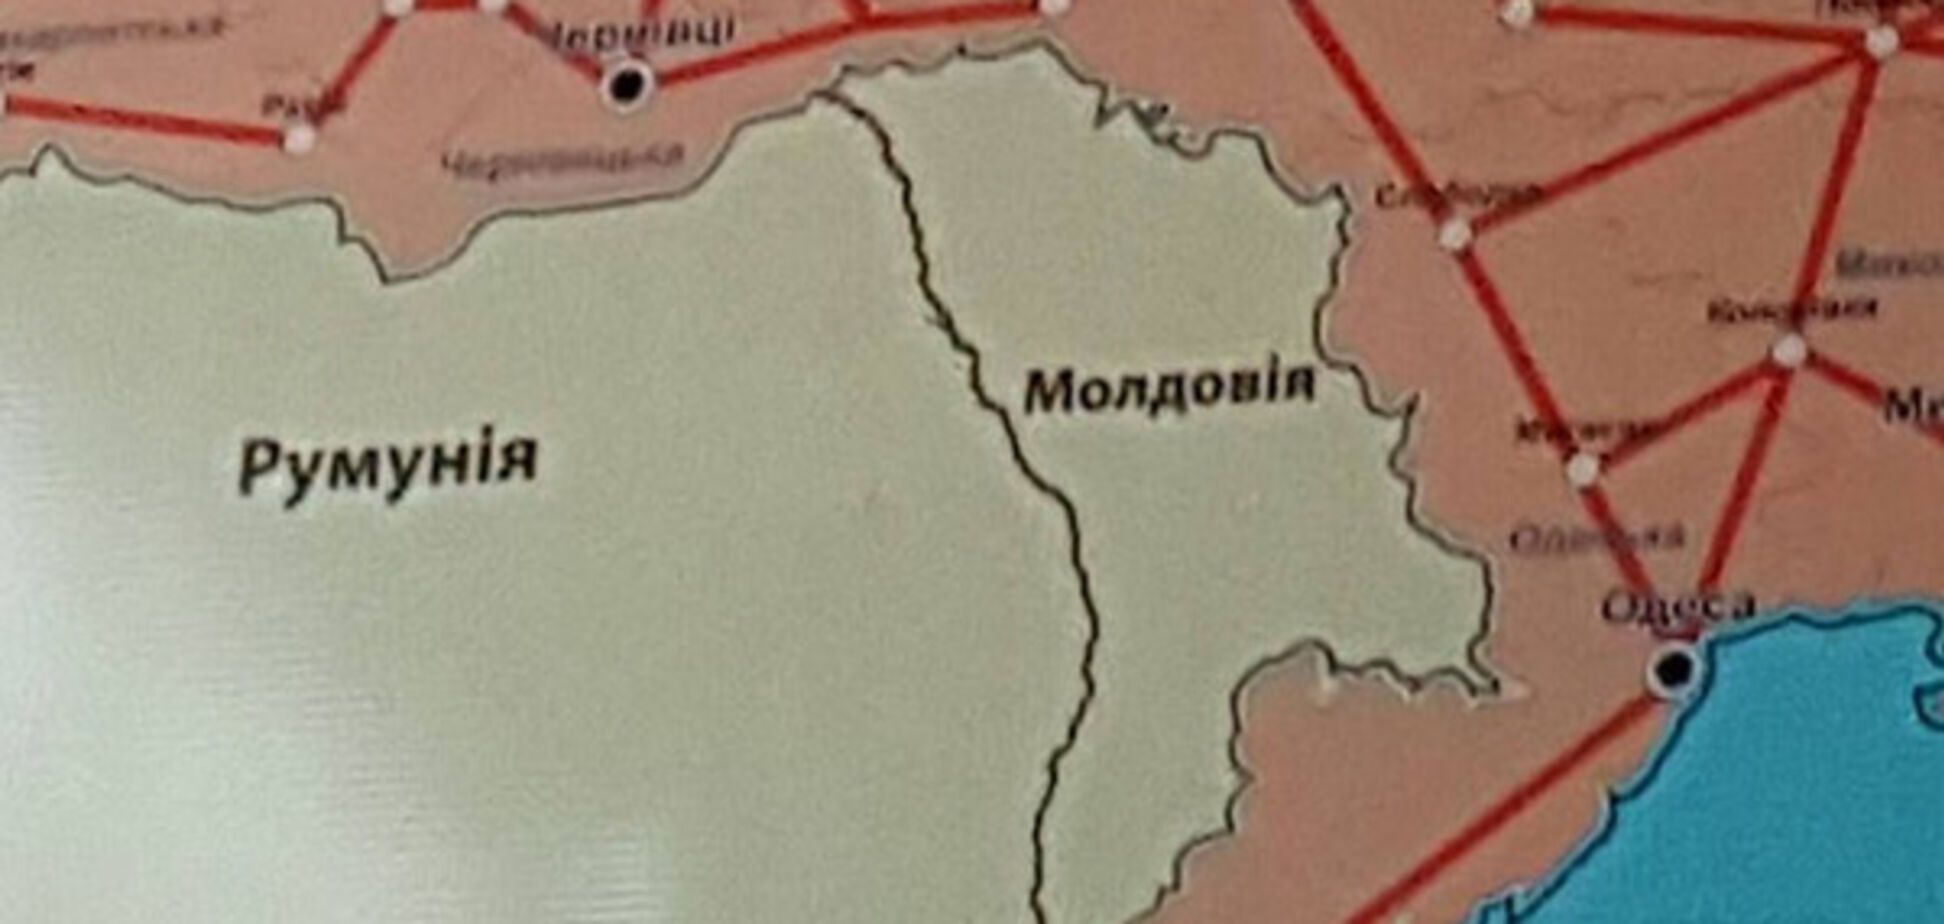 Карта